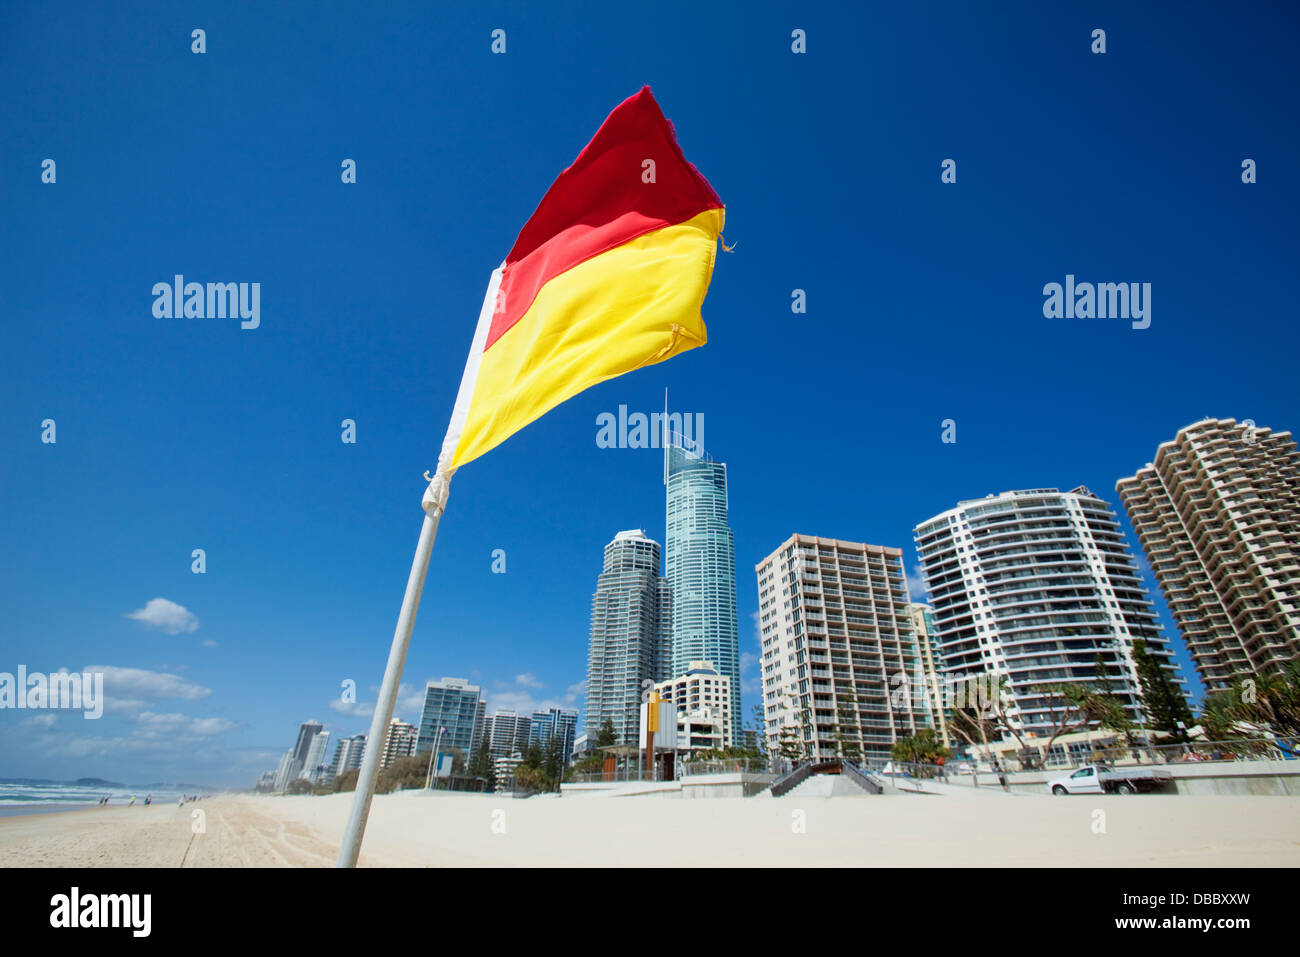 Surf Lifesaving Fahne mit Skyline der Stadt im Hintergrund. Surfers Paradise, Gold Coast, Queensland, Australien Stockfoto